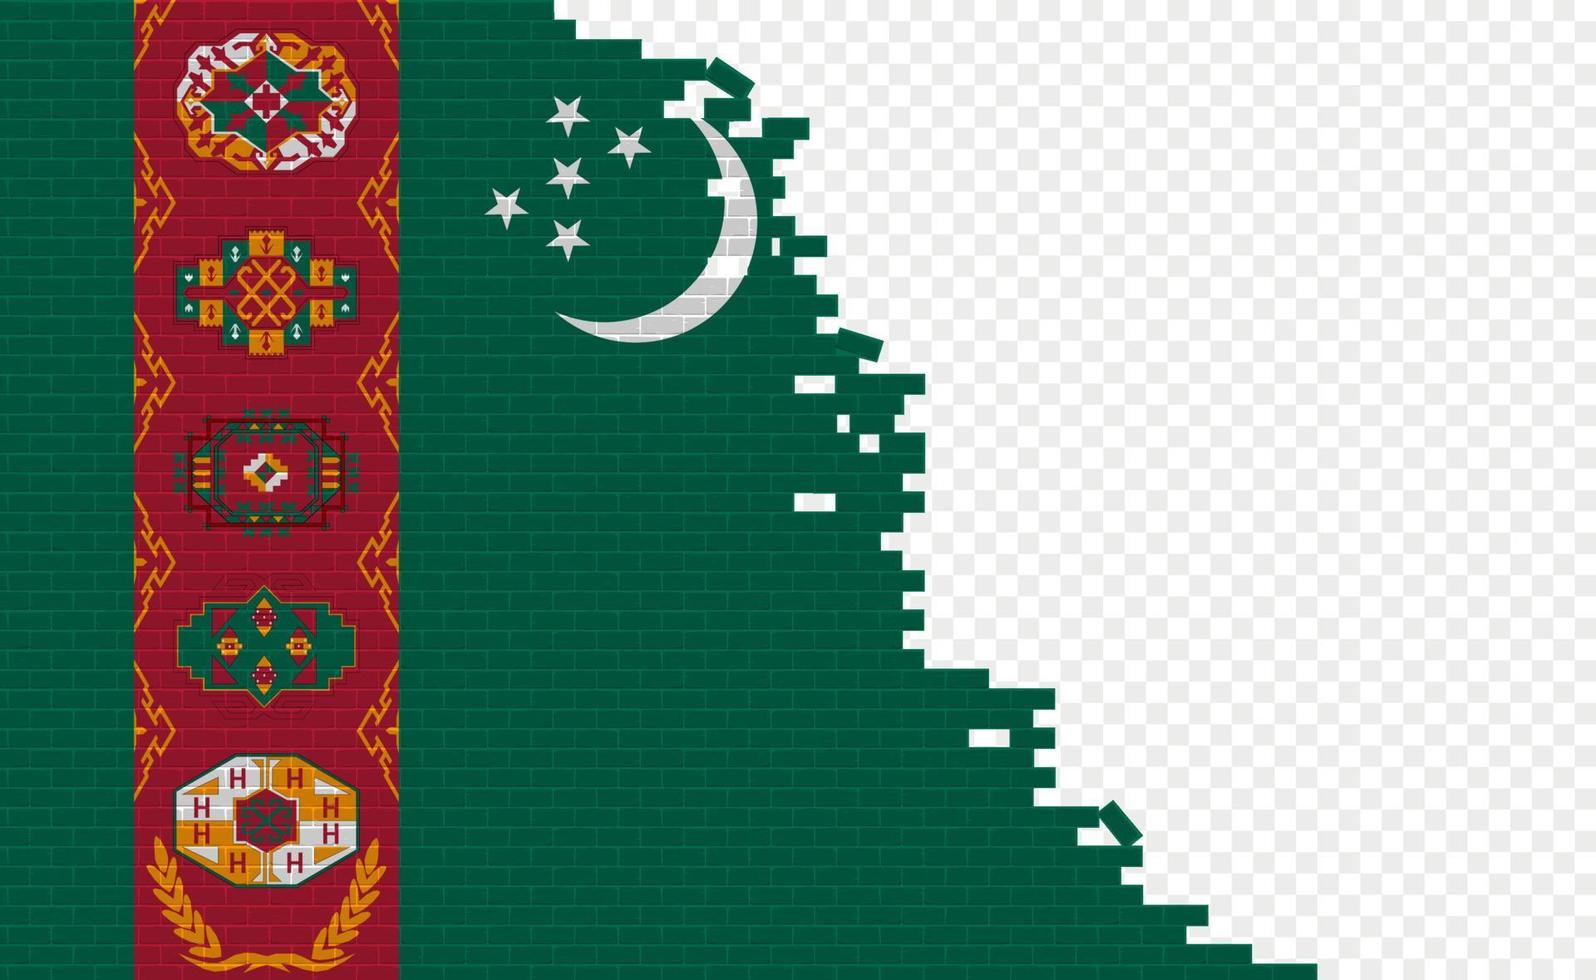 bandera de turkmenistán en la pared de ladrillos rotos. campo de bandera vacío de otro país. comparación de países. fácil edición y vector en grupos.